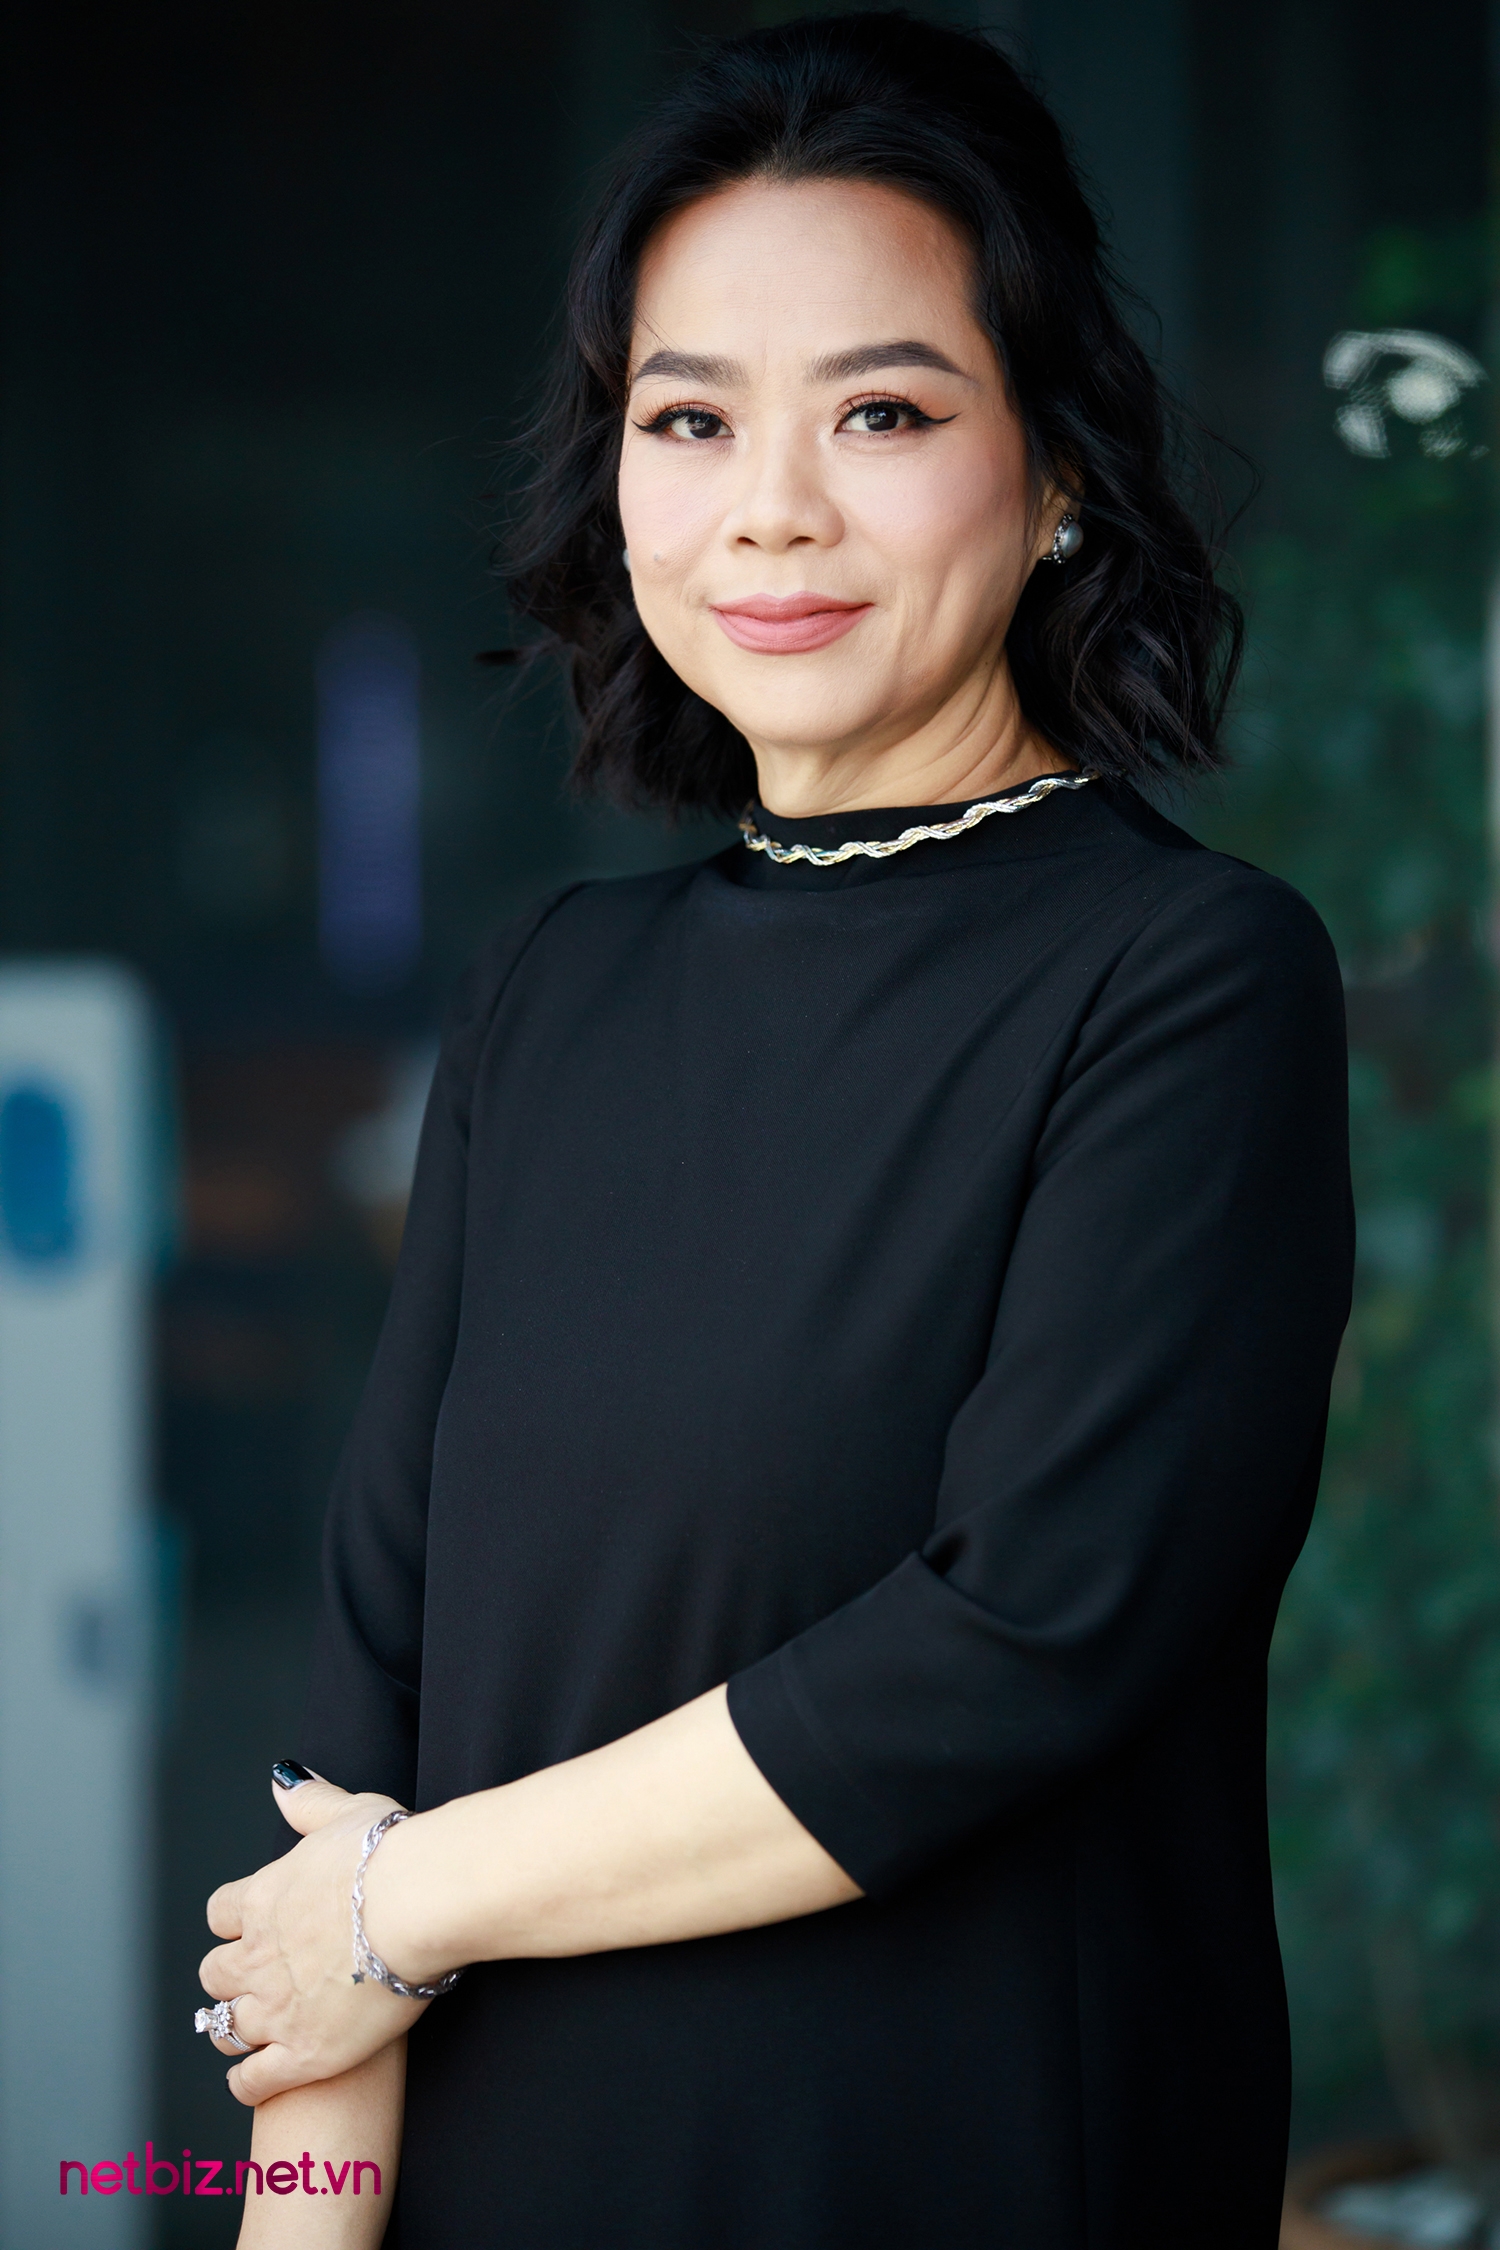 CEO Thiên Kim: "Tôi đã giảm cân thành công ở tuổi hơn 40, các bạn trẻ chắn chắn không thể thất bại!"